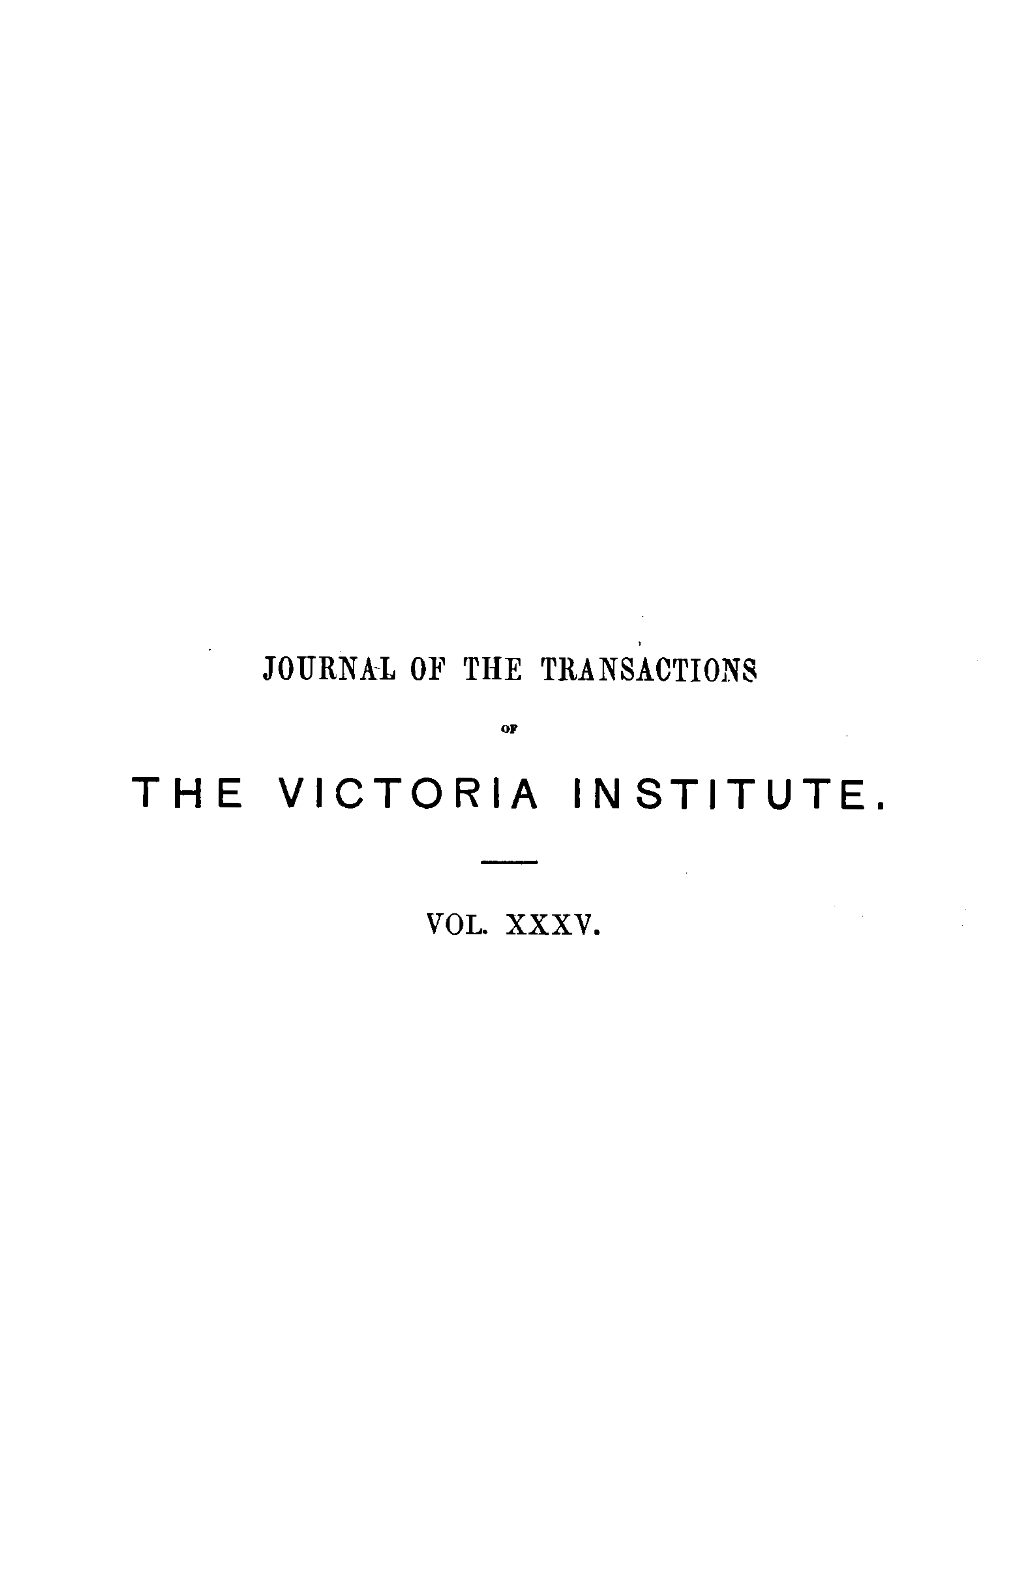 The Victoria Institute